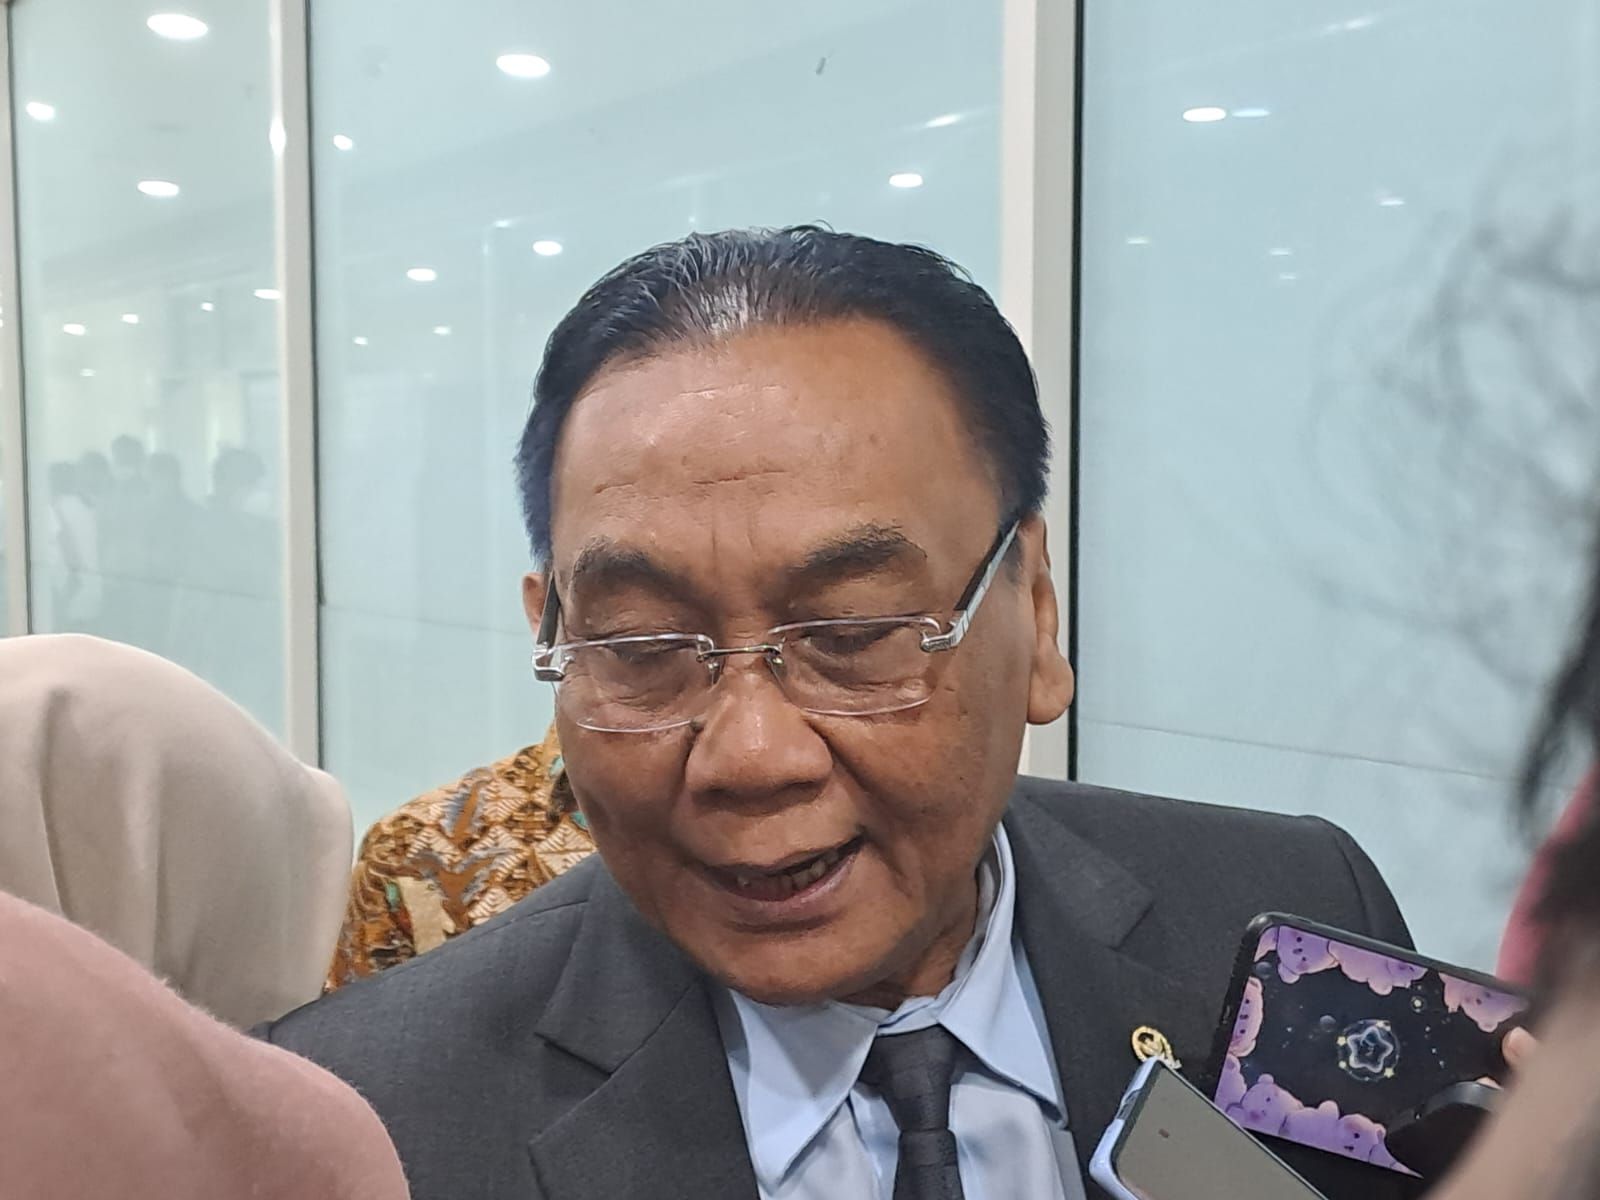 Satu Anggota Komisi III Jadi Tersangka KPK, Bambang Pacul: Kita Berduka, tapi Tak Bisa Apa-apa